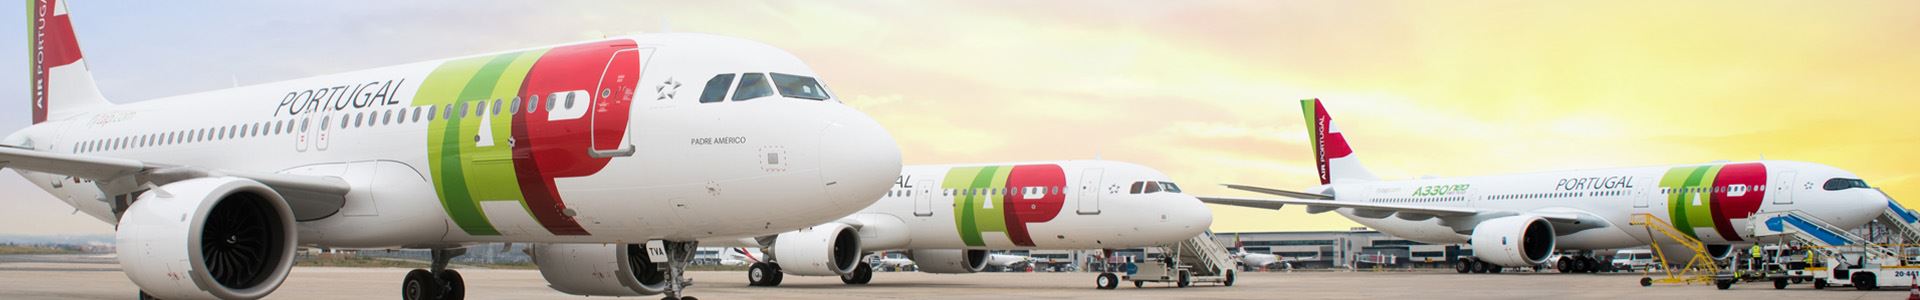 Foto von drei nebeneinander angeordneten Flugzeugen, verziert mit den Farben und dem Logo von TAP Air Portugal.